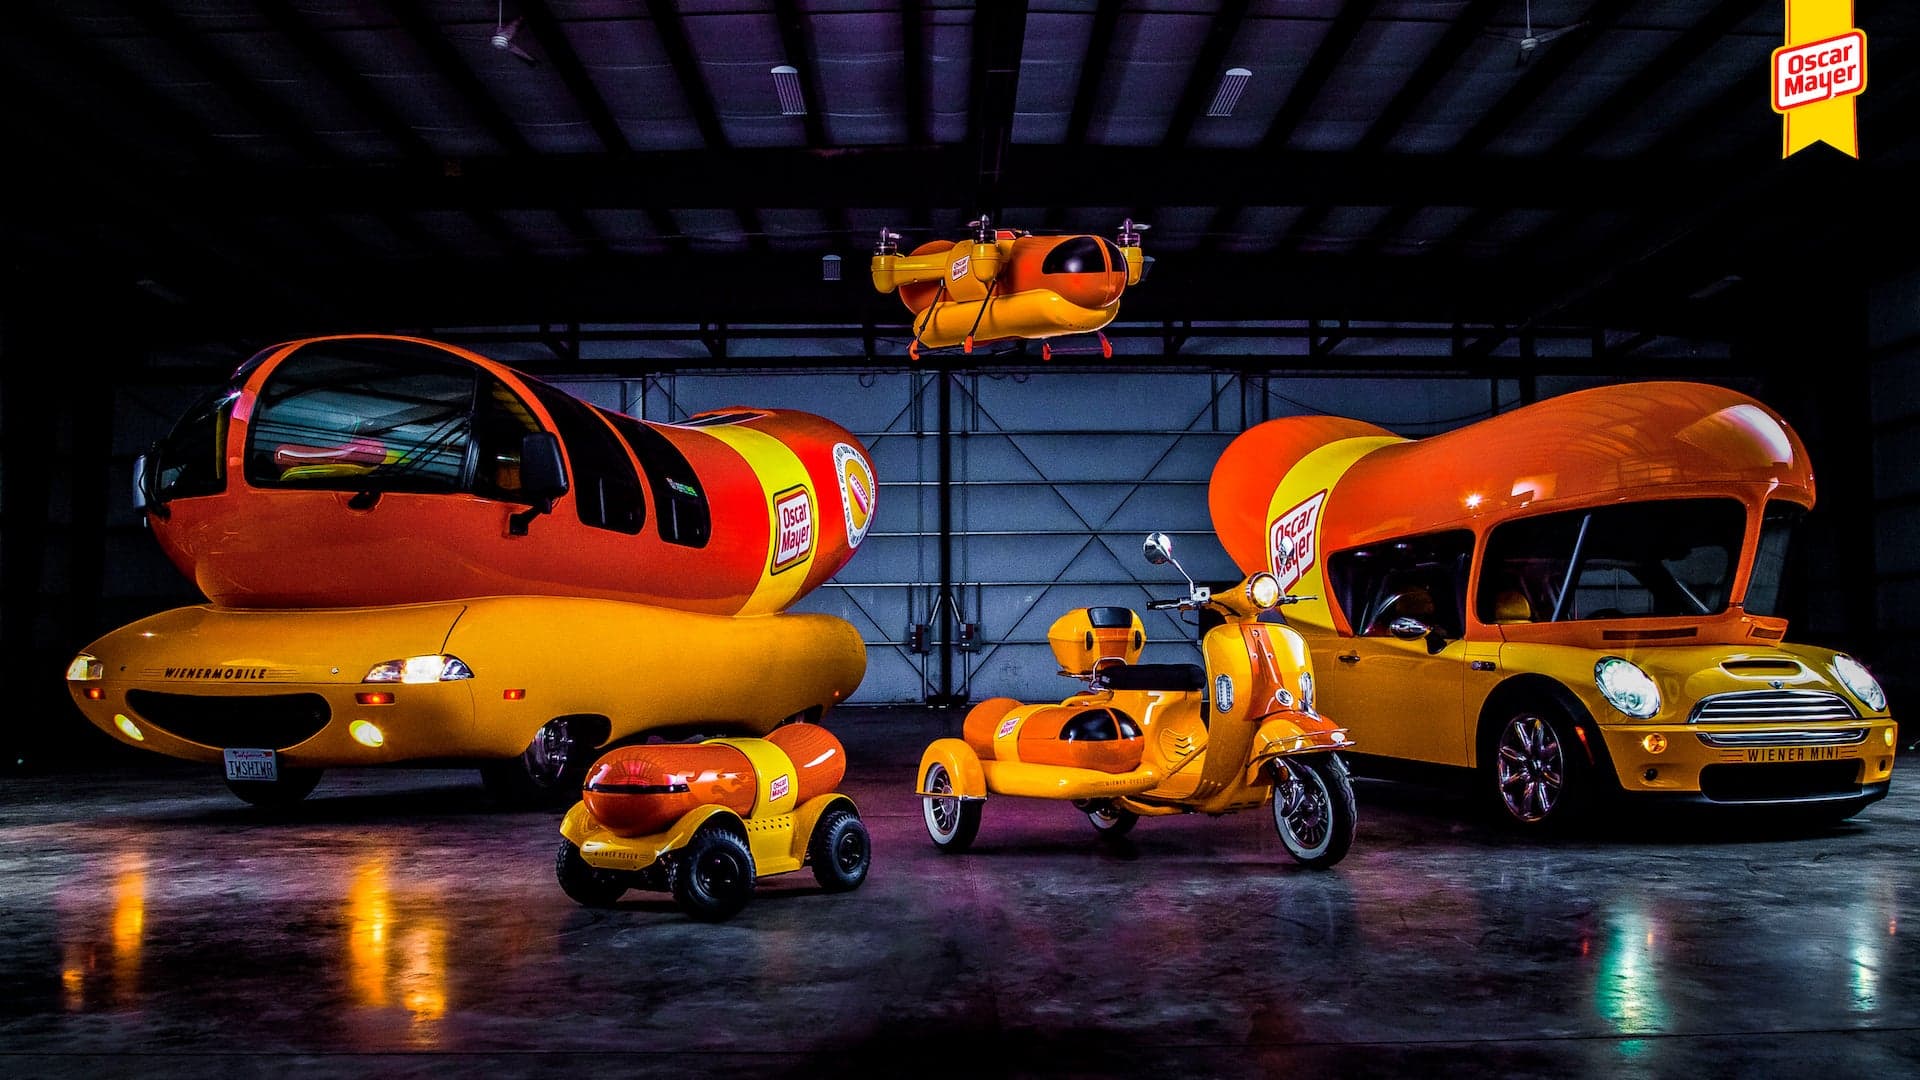 Oscar Mayer Adds ‘WienerDrone’ to Wienermobile Fleet